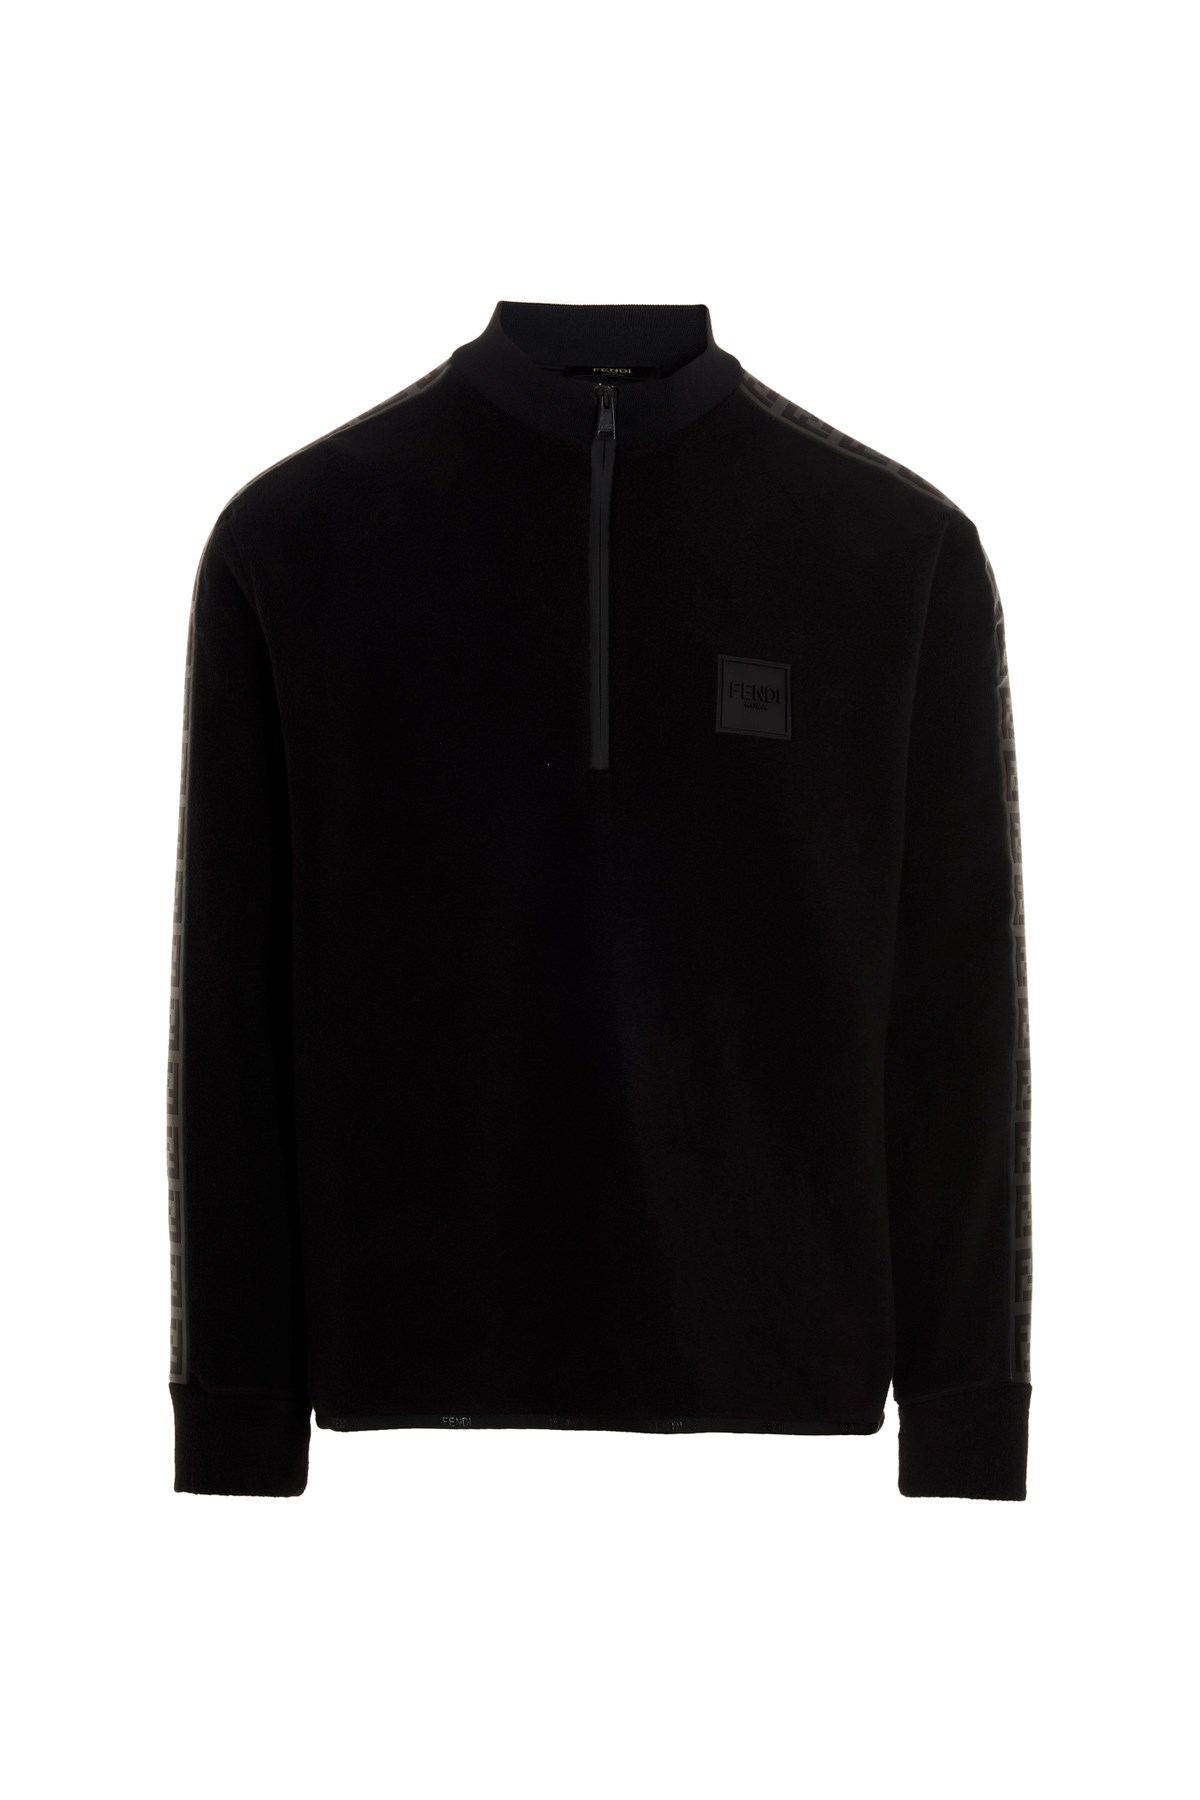 FENDI Zip-Up Fleece Sweater